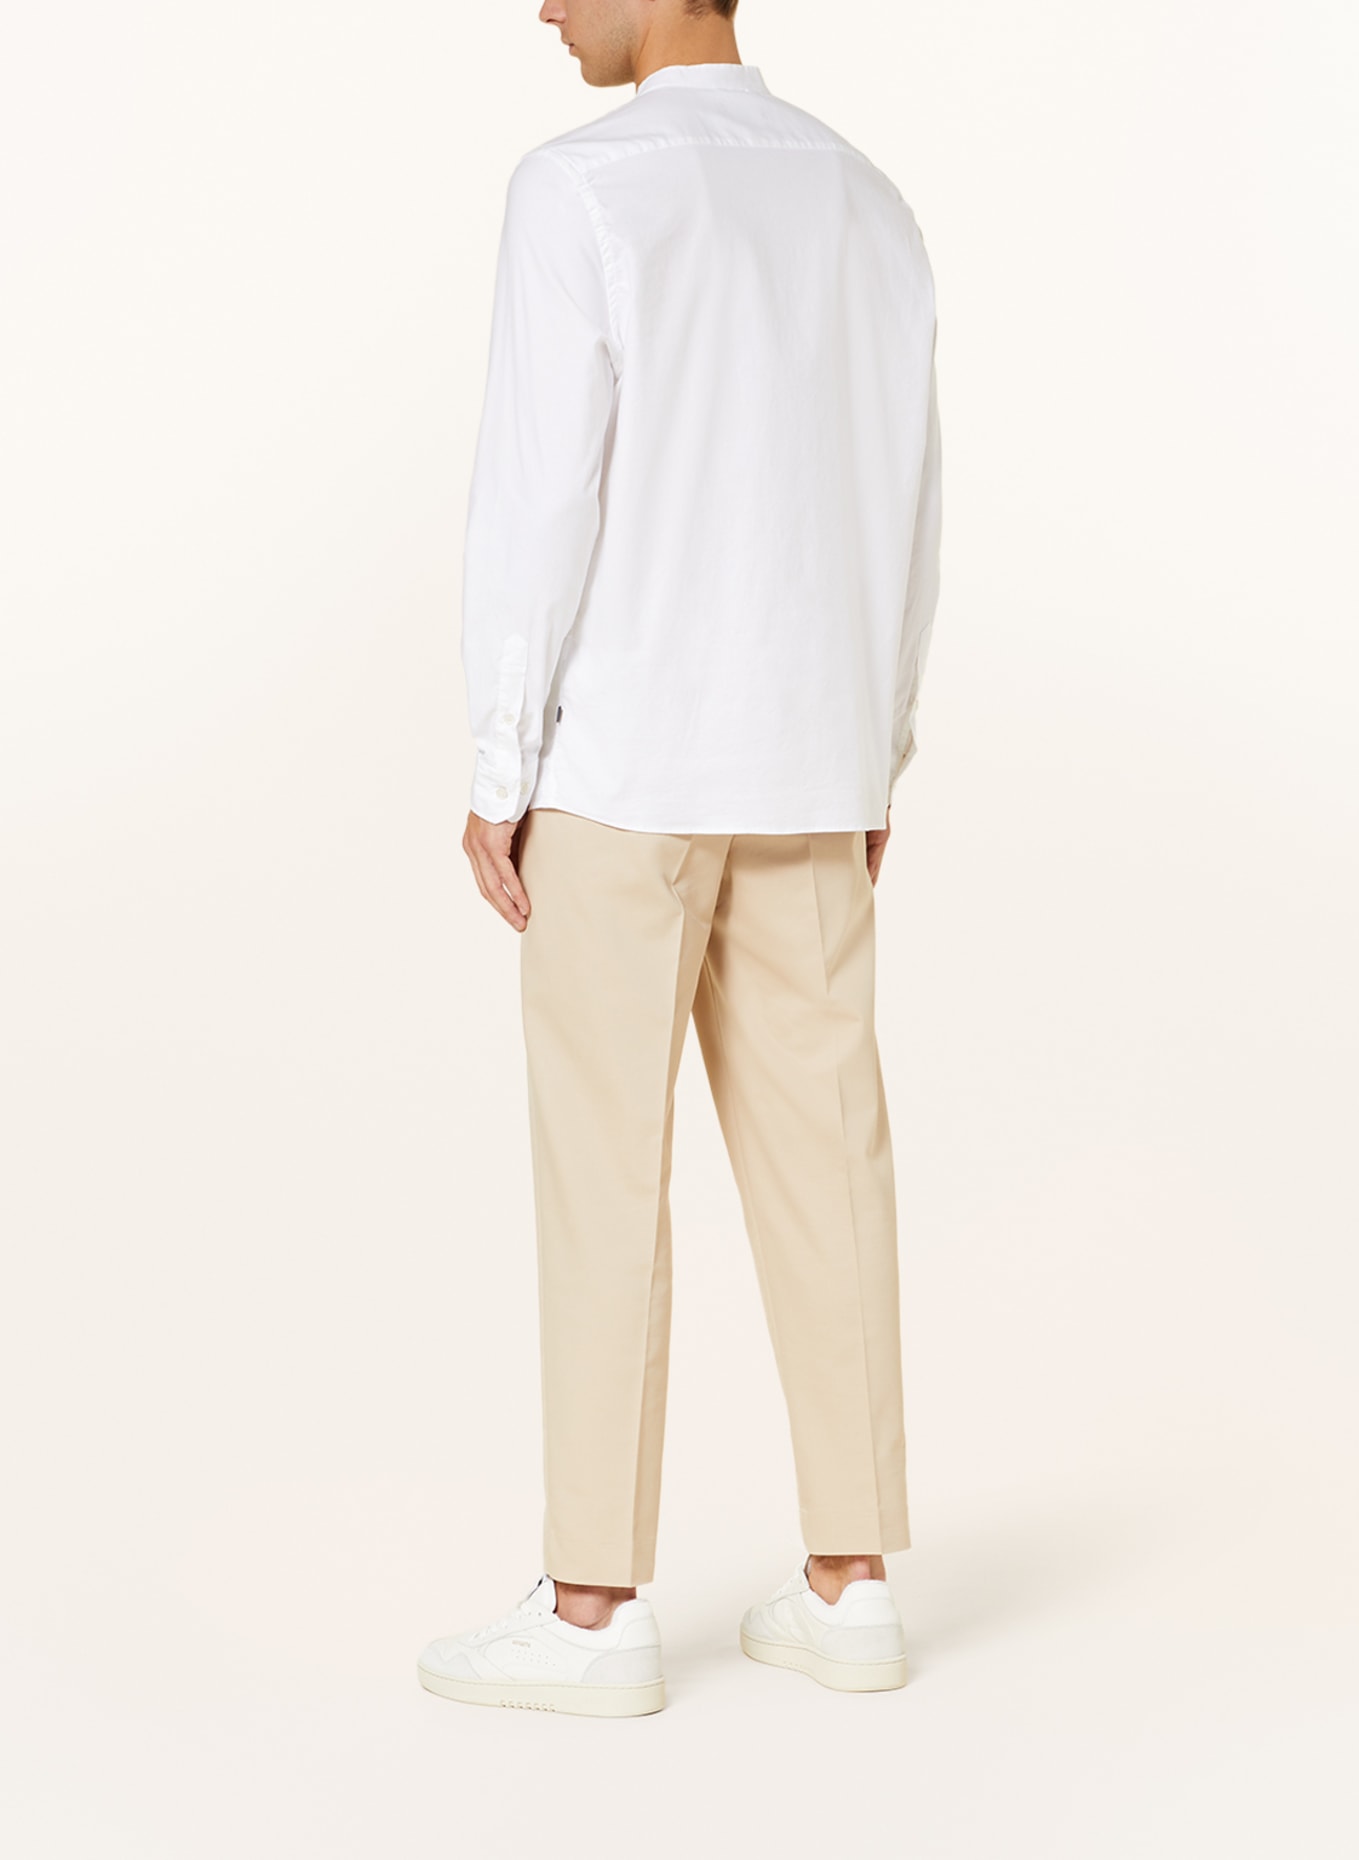 MAERZ MUENCHEN Hemd Modern Fit, Farbe: WEISS (Bild 3)